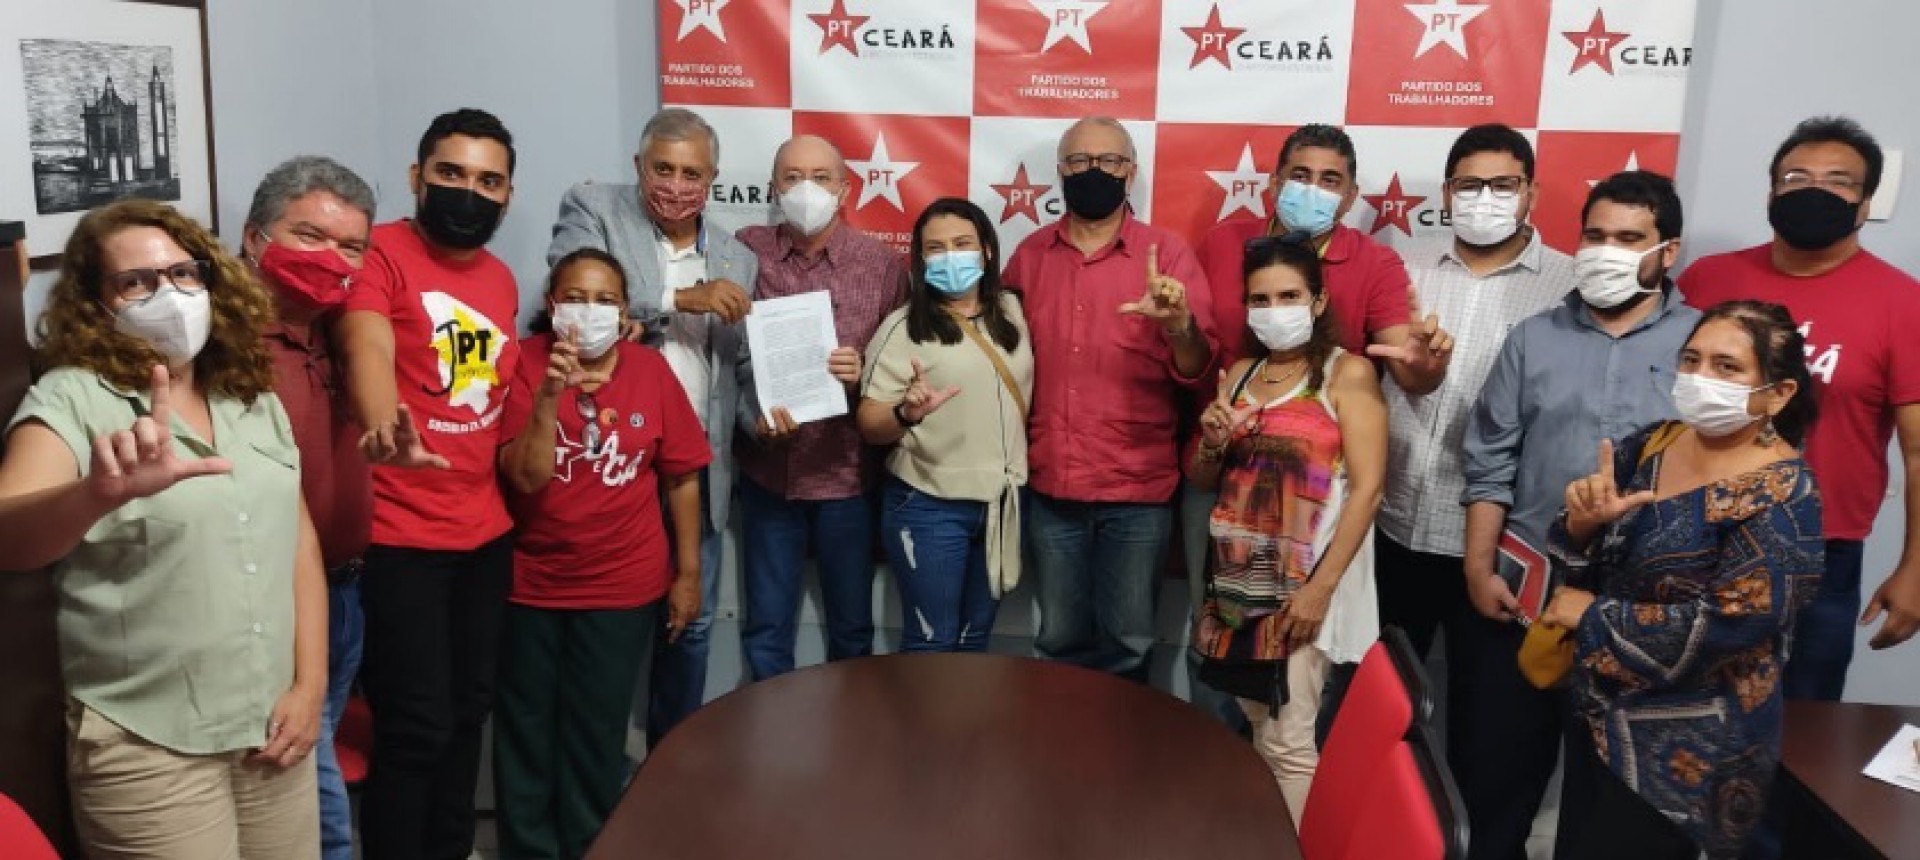 Documento pede debate sobre candidatura do PT ao Governo do Ceará (Foto: DIVULGAÇÃO)